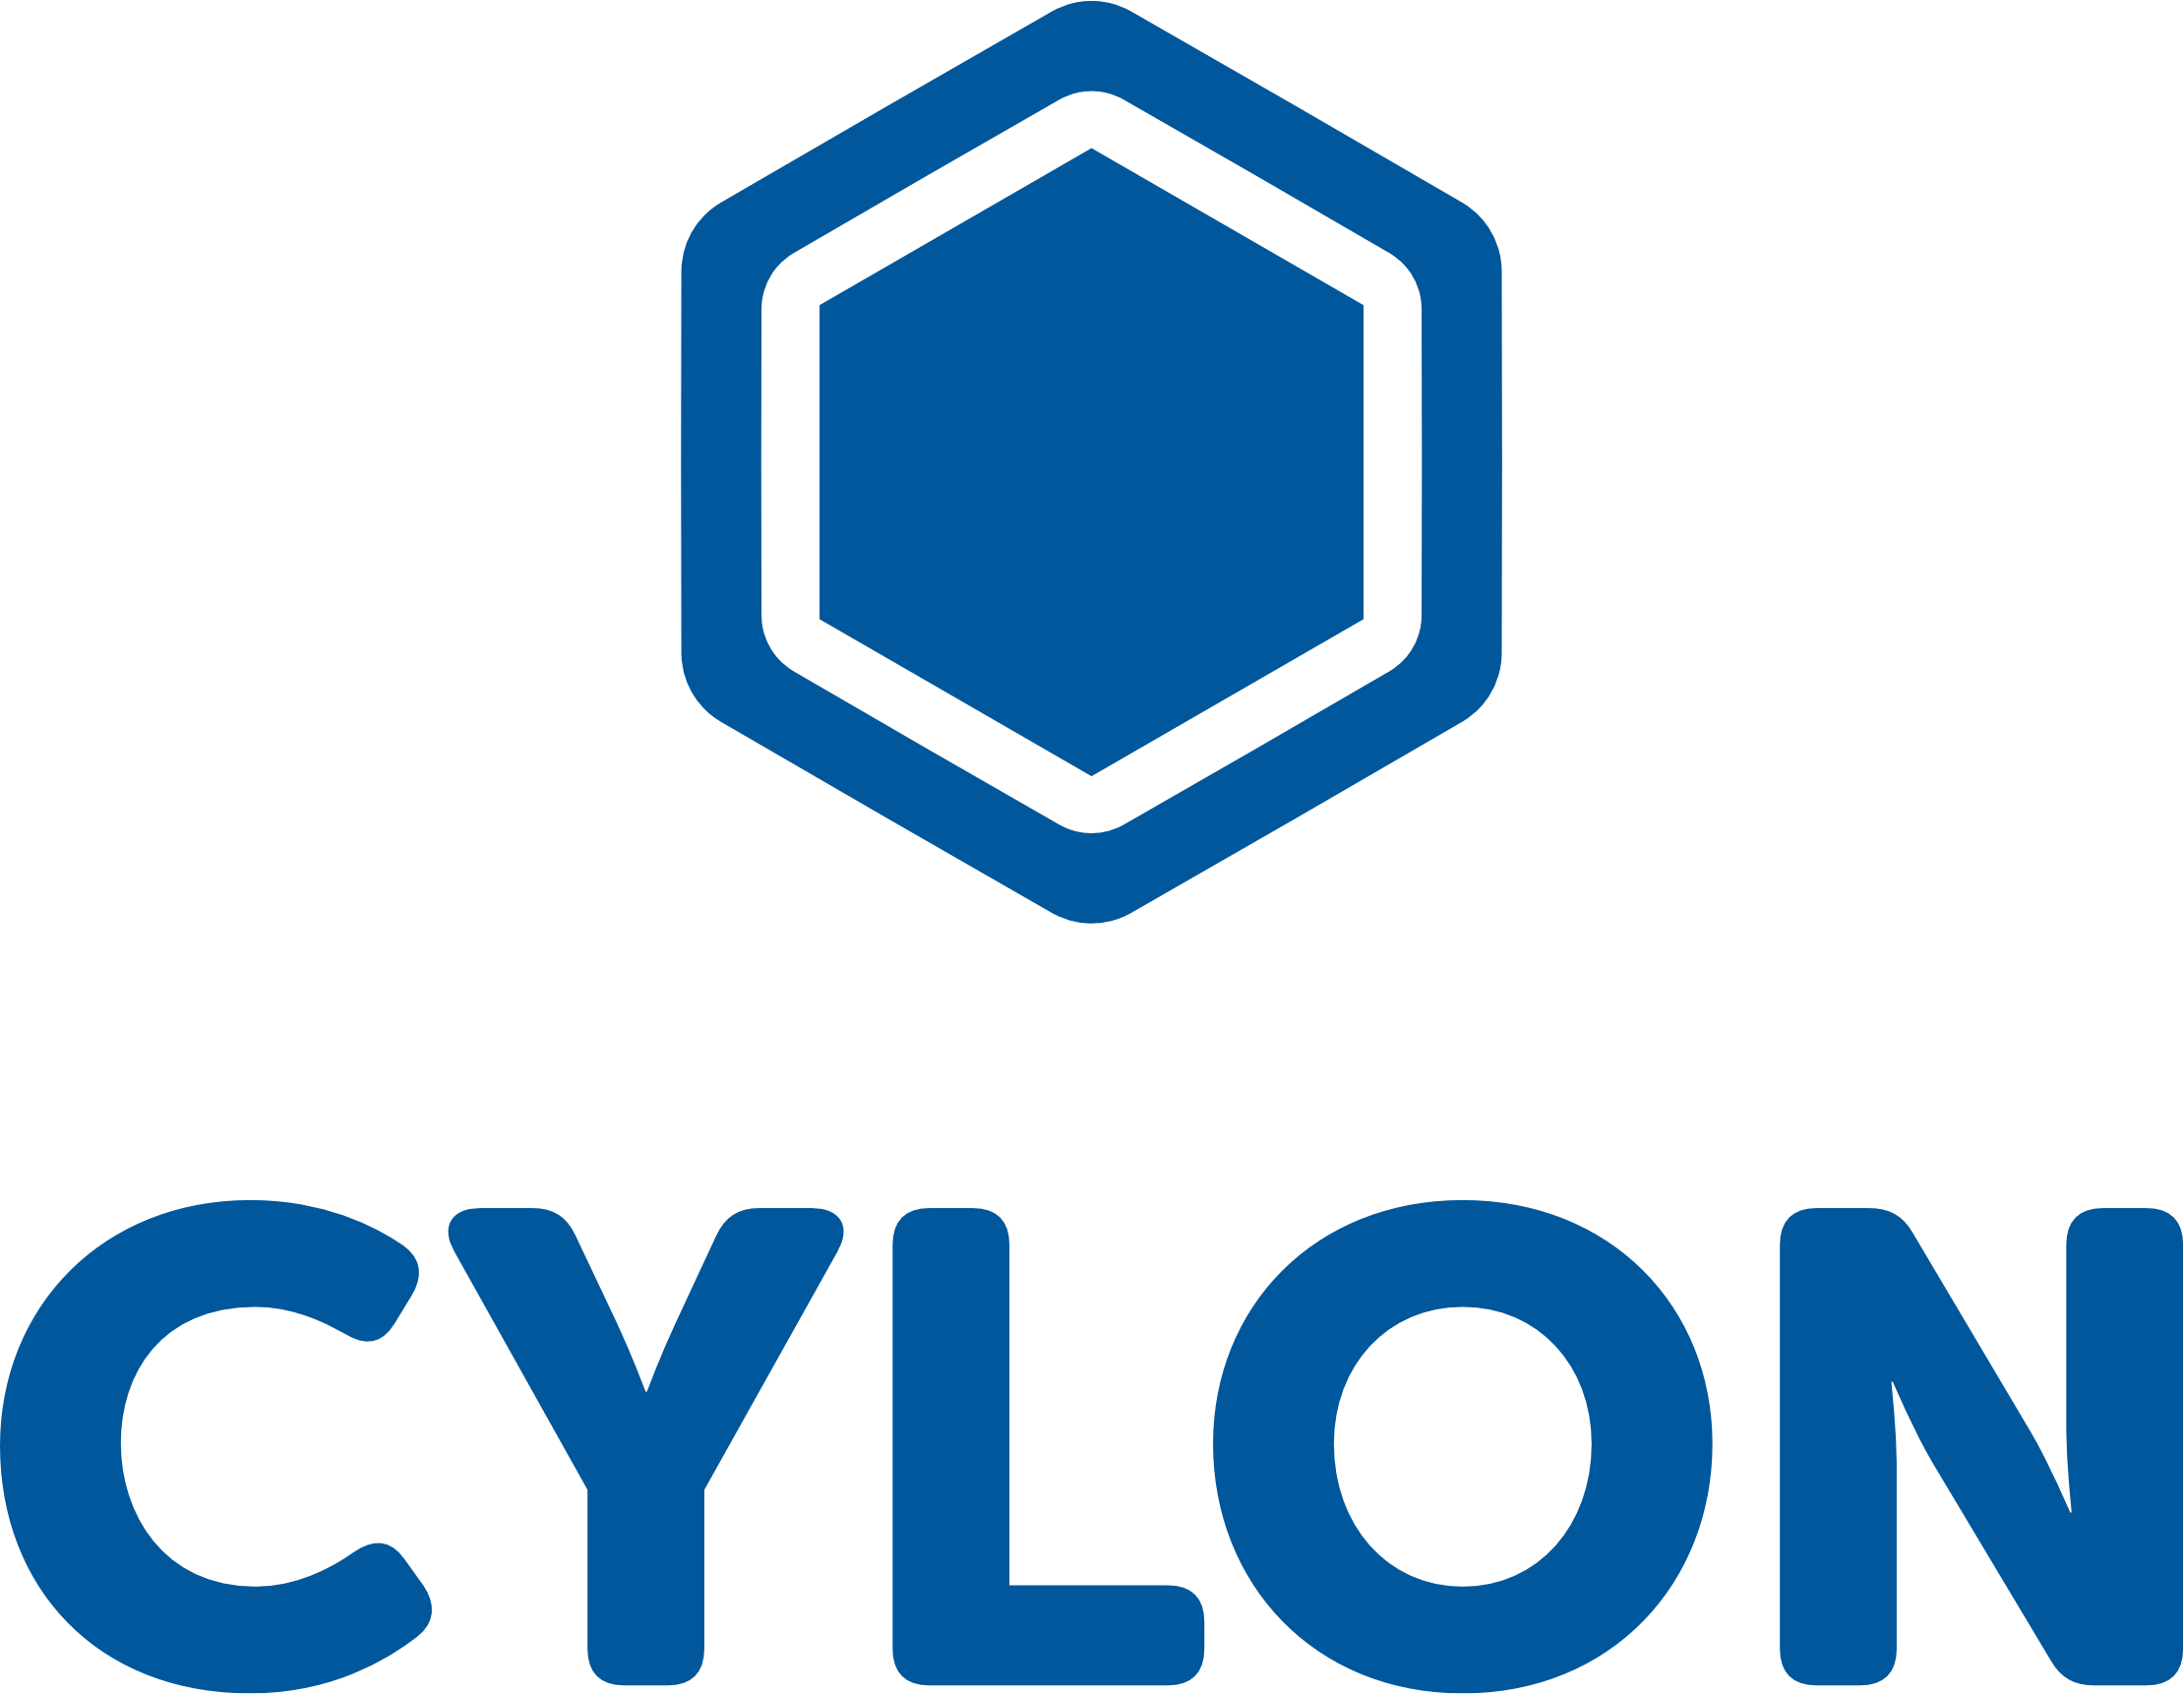 Cylon Logo - TechDay - Cyber London - CyLon